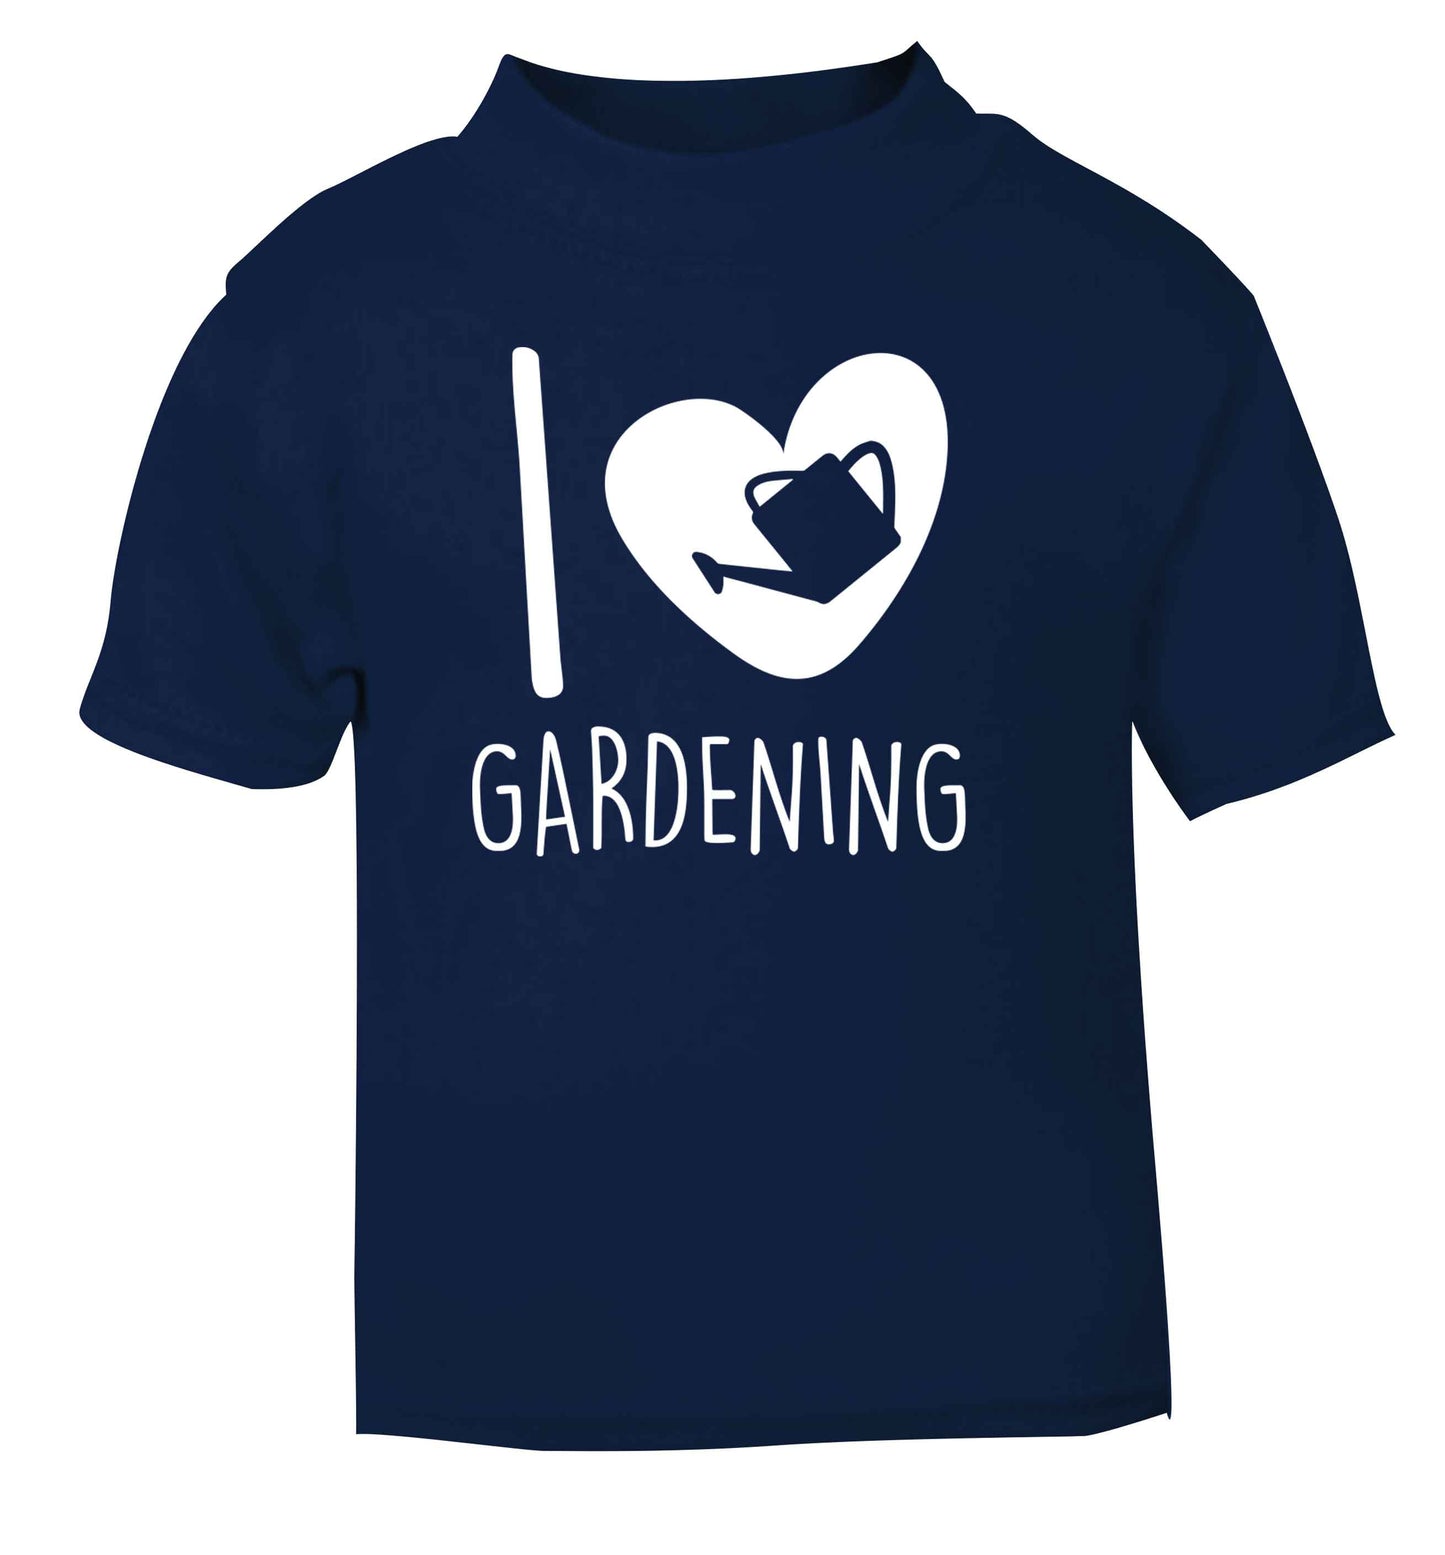 I love gardening navy Baby Toddler Tshirt 2 Years